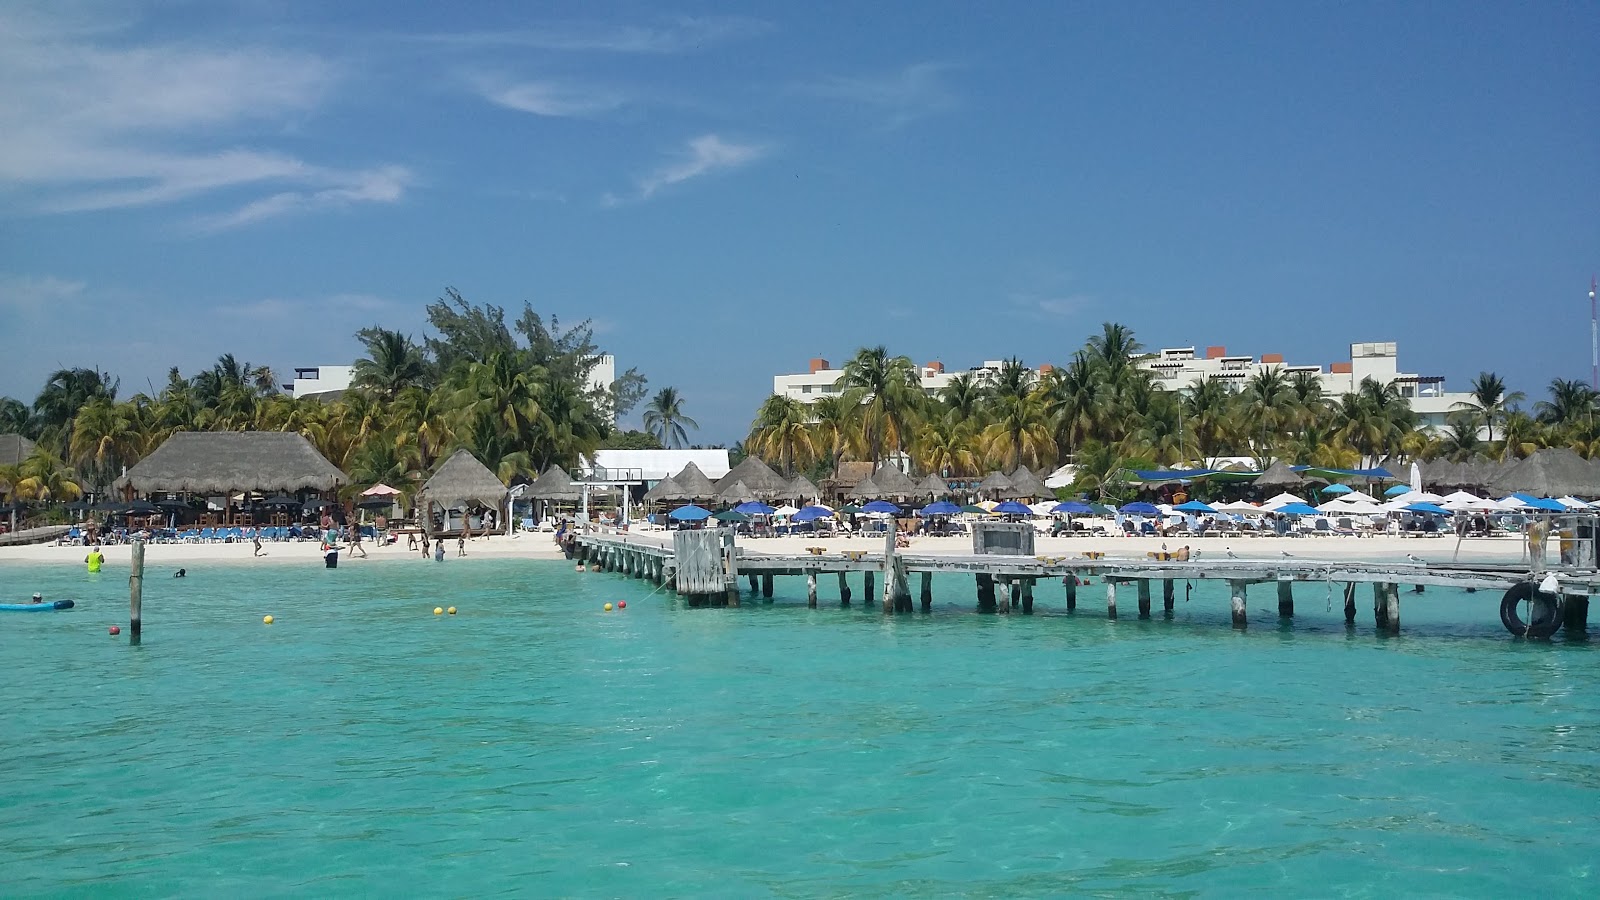 Zdjęcie Playa Tortugas - popularne miejsce wśród znawców relaksu